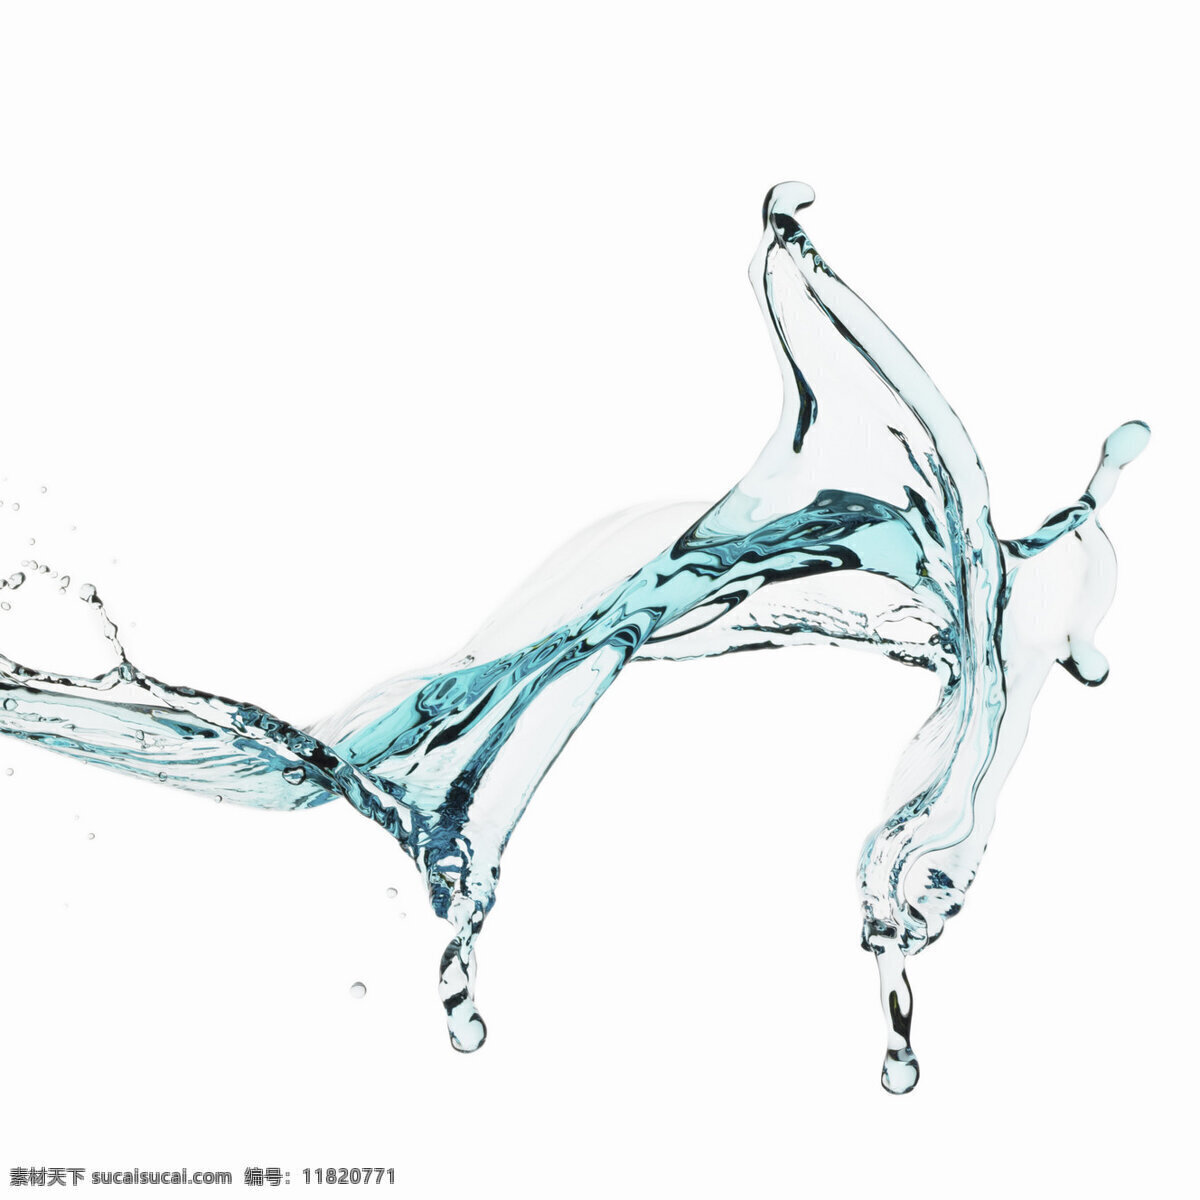 水珠 水面 水 水素材 气泡 动态水 水滴 水气泡 水泡 水花 水花溅起 生活百科 生活素材